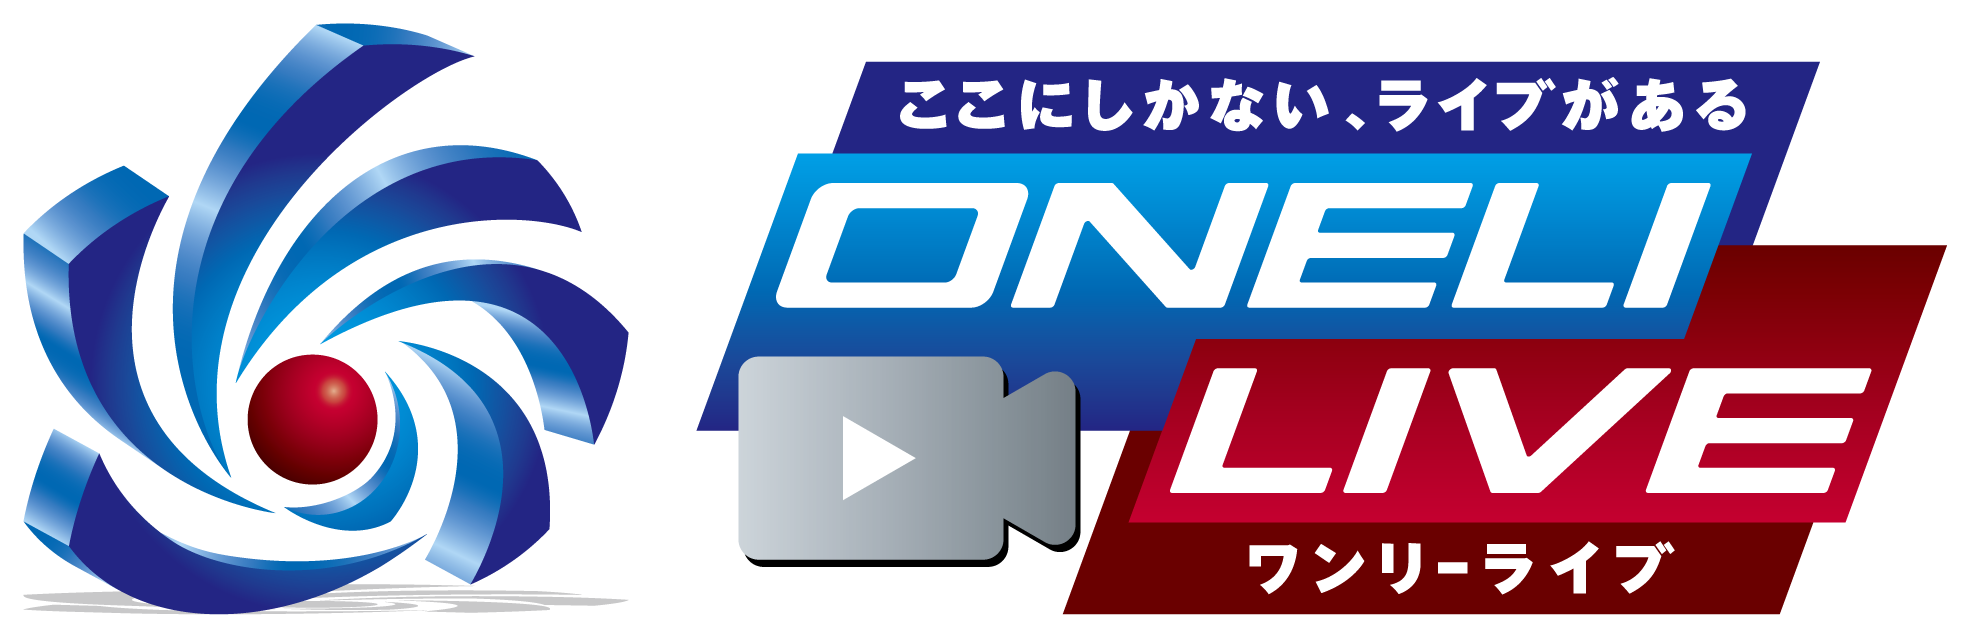 oneli live logo